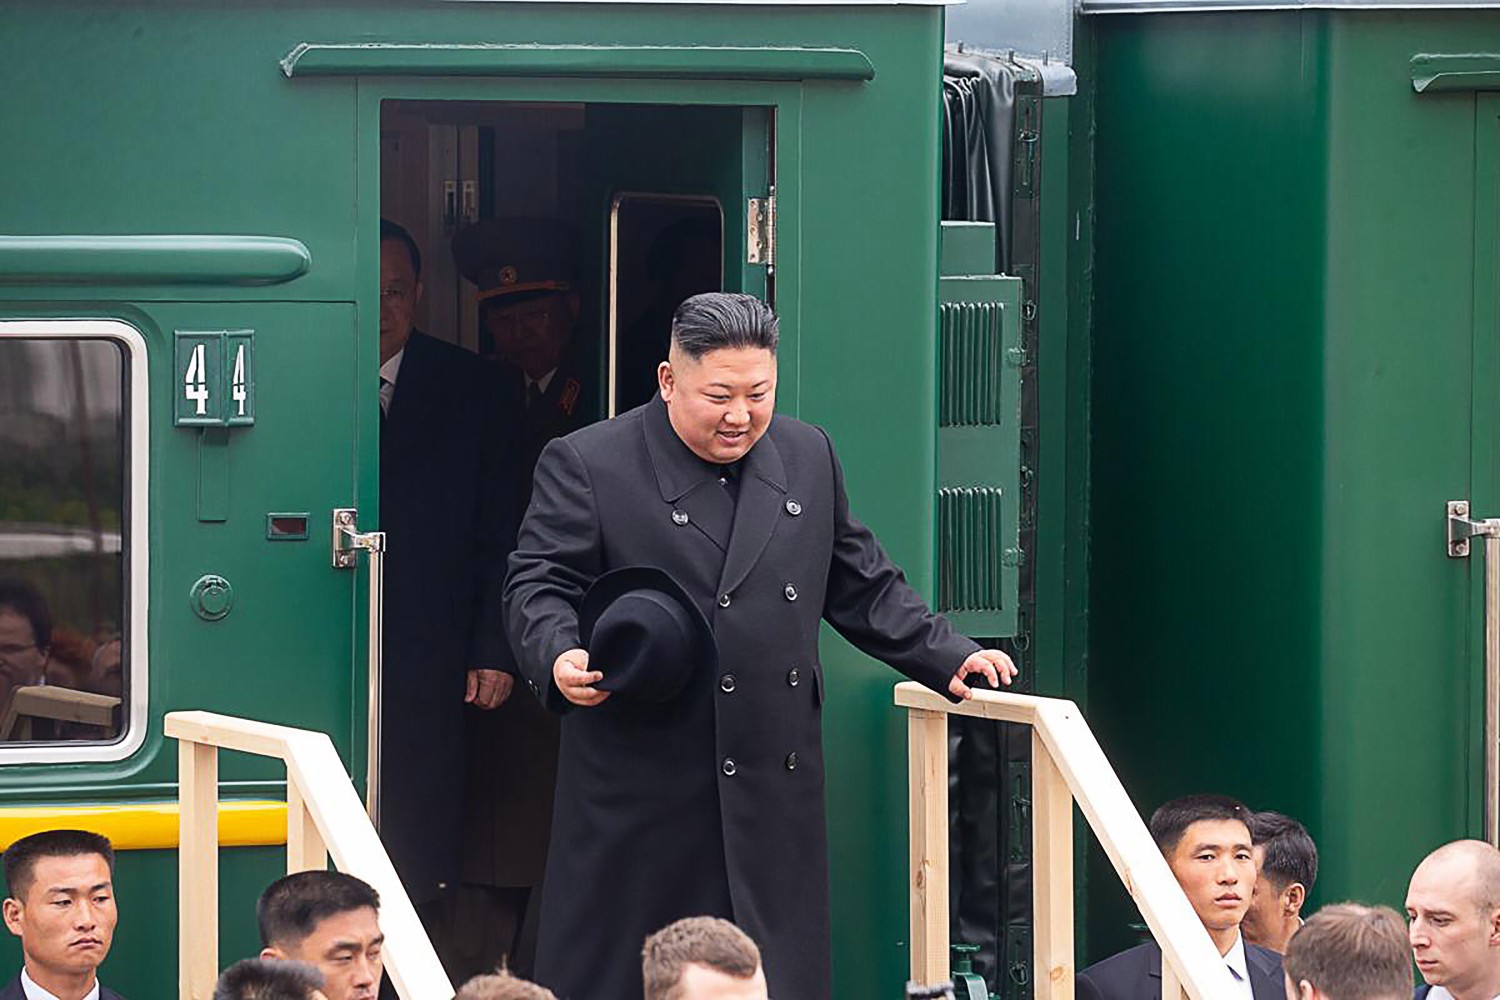 Граница между Россией и Северной Кореей, через которую к нам приезжал Ким Чен Ын: как она выглядит и чем необычна. Рассказываем, показываем